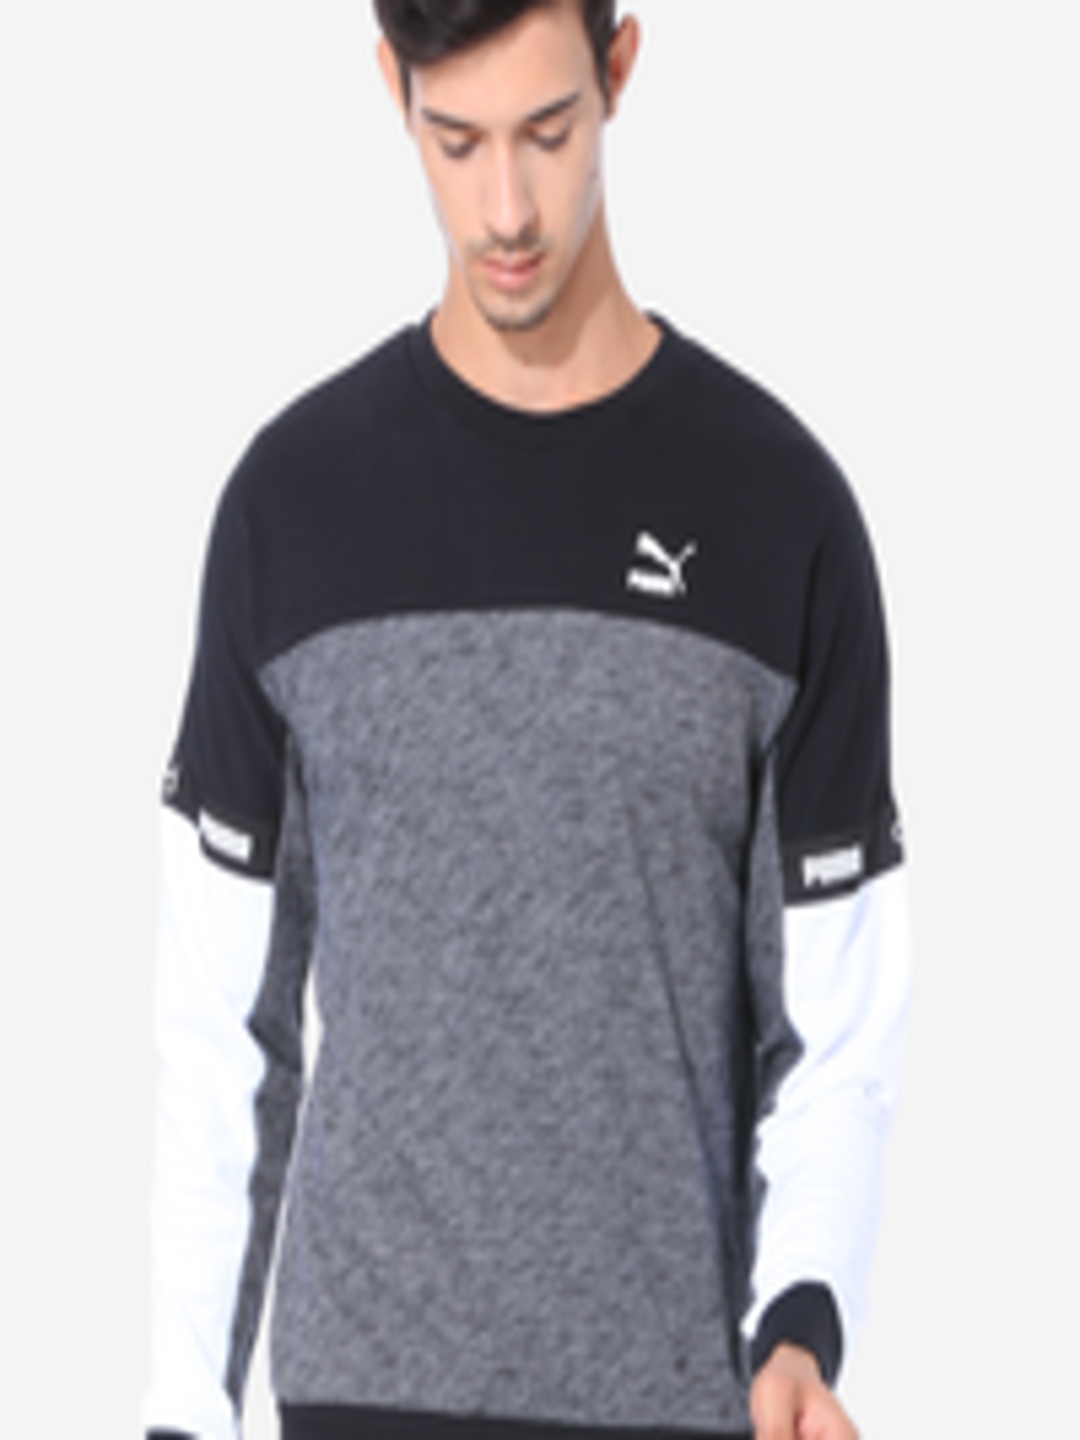 Buy Puma Men Black & Grey Colourblocked VK Crew Sweatshirt ...